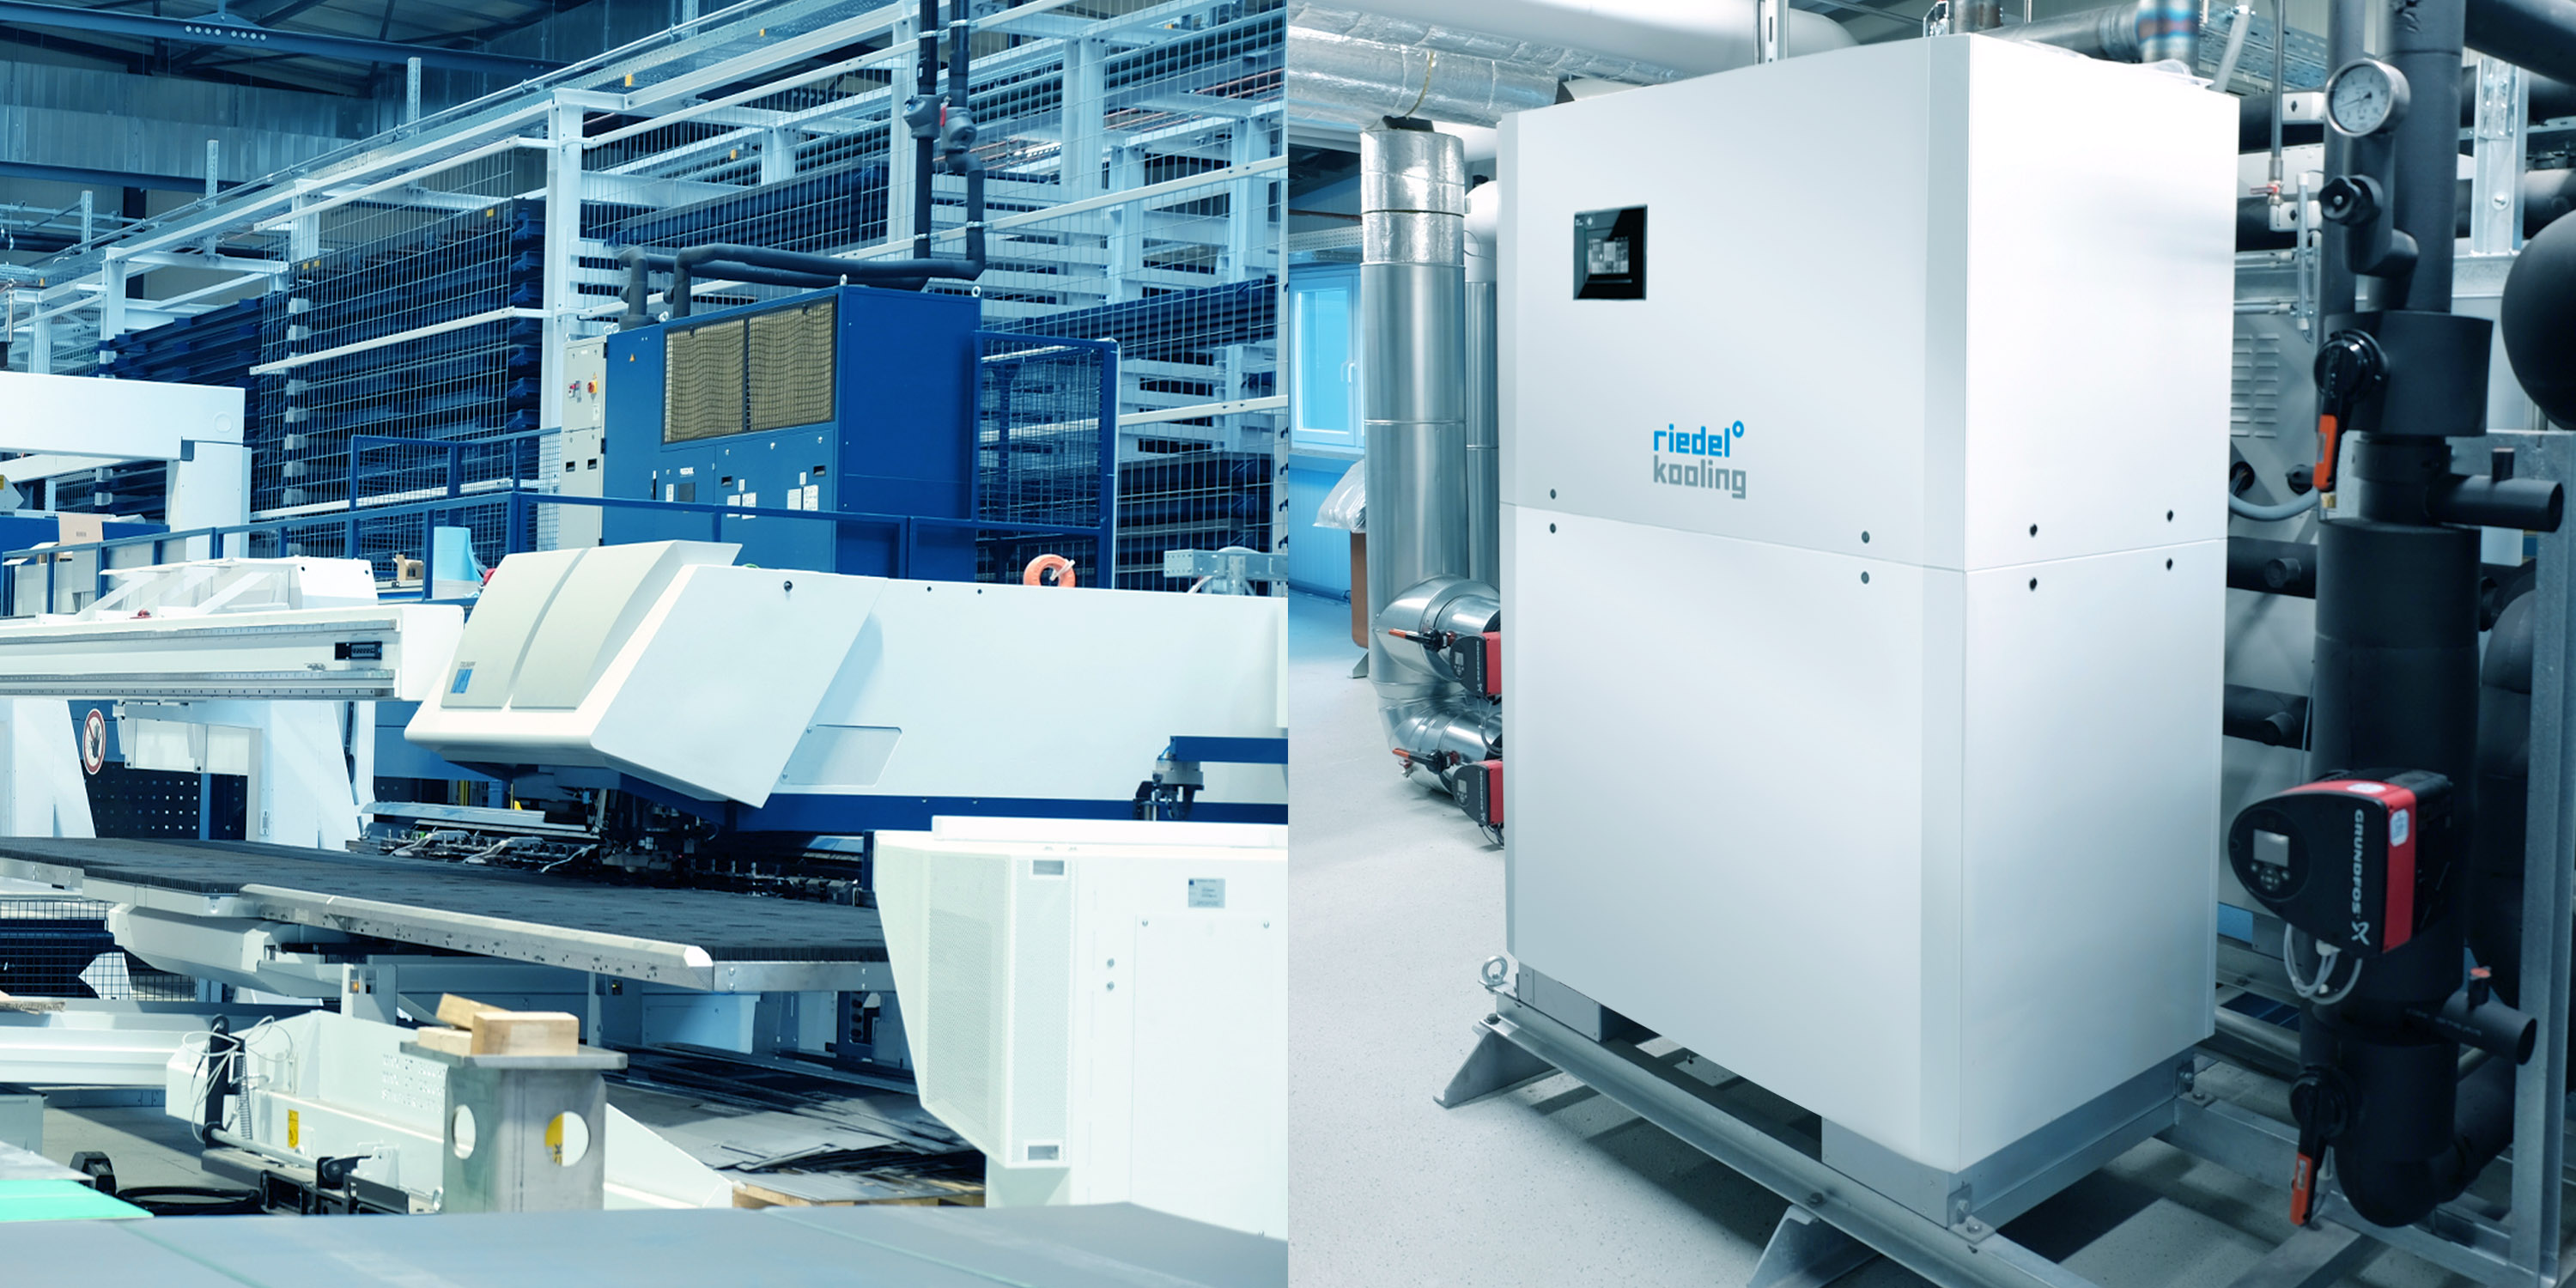 Riedel Kooling, Wärmepumpen-Systemlösung zur Kühlung, Beheizung, Abwärmenutzung und Warmwasserbereitung.